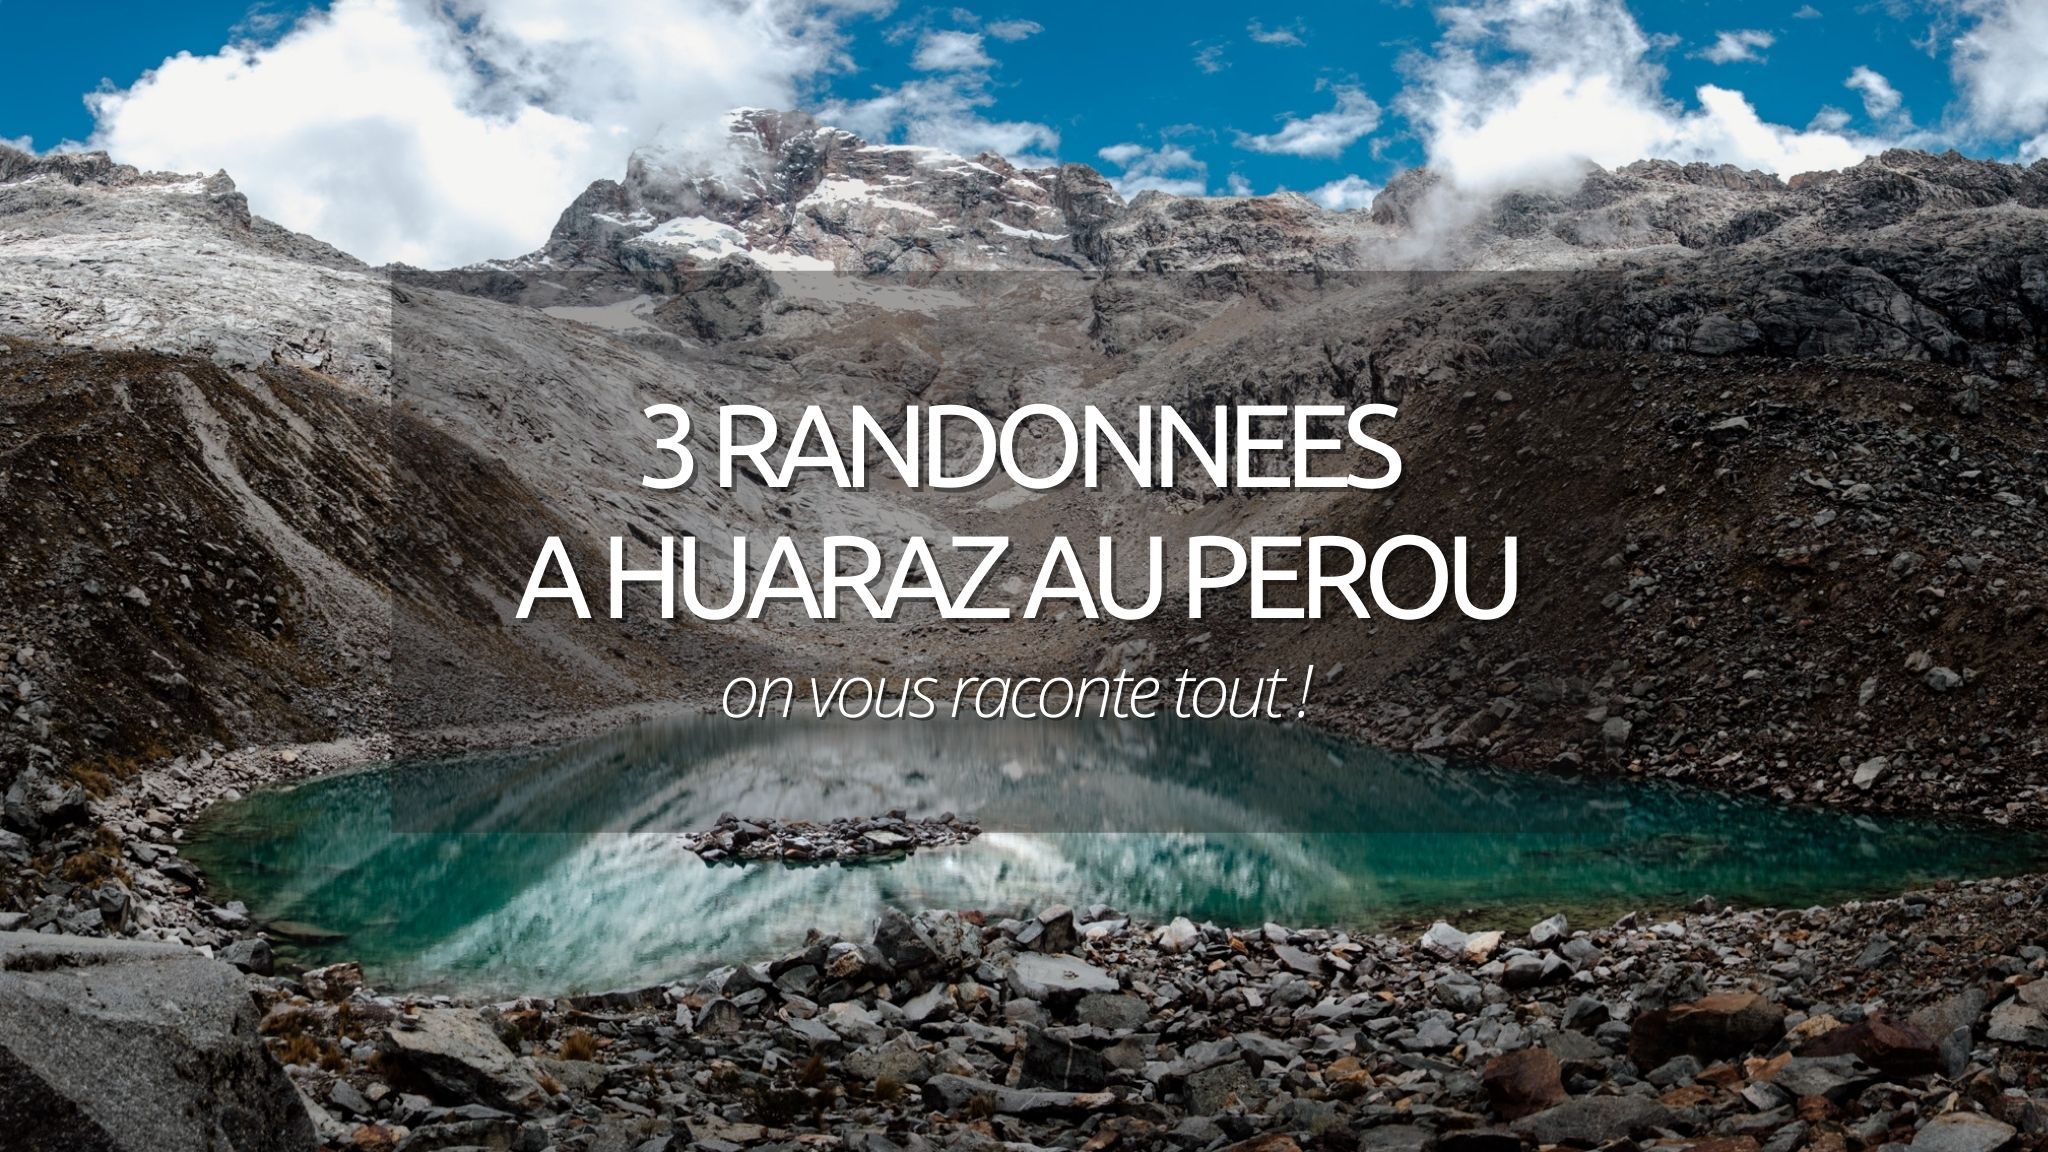 3 randonnées pour en prendre plein les yeux à Huaraz au Perou